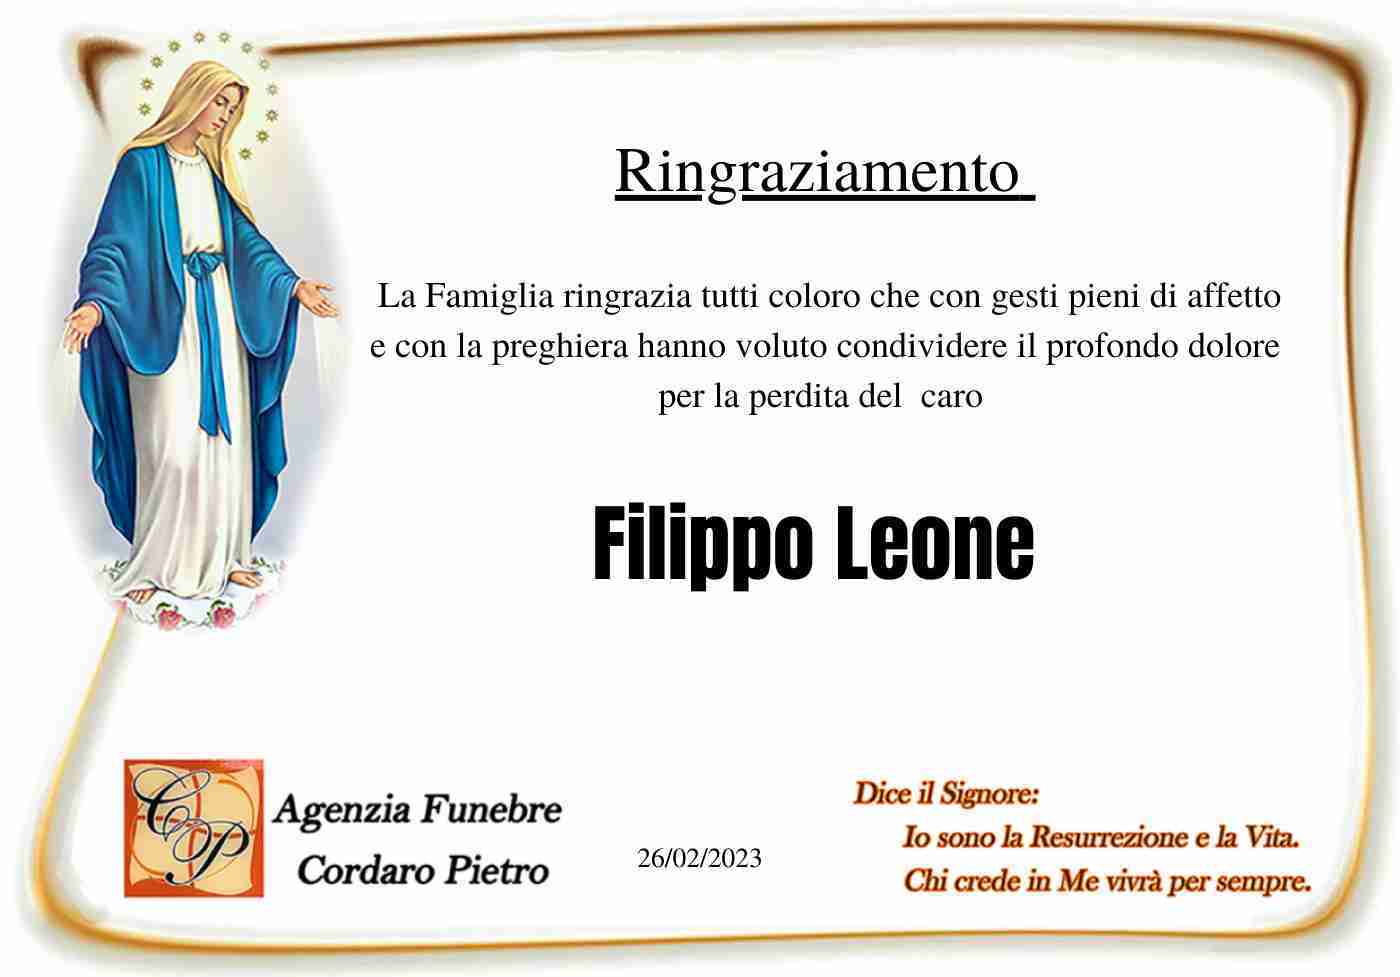 Filippo Leone